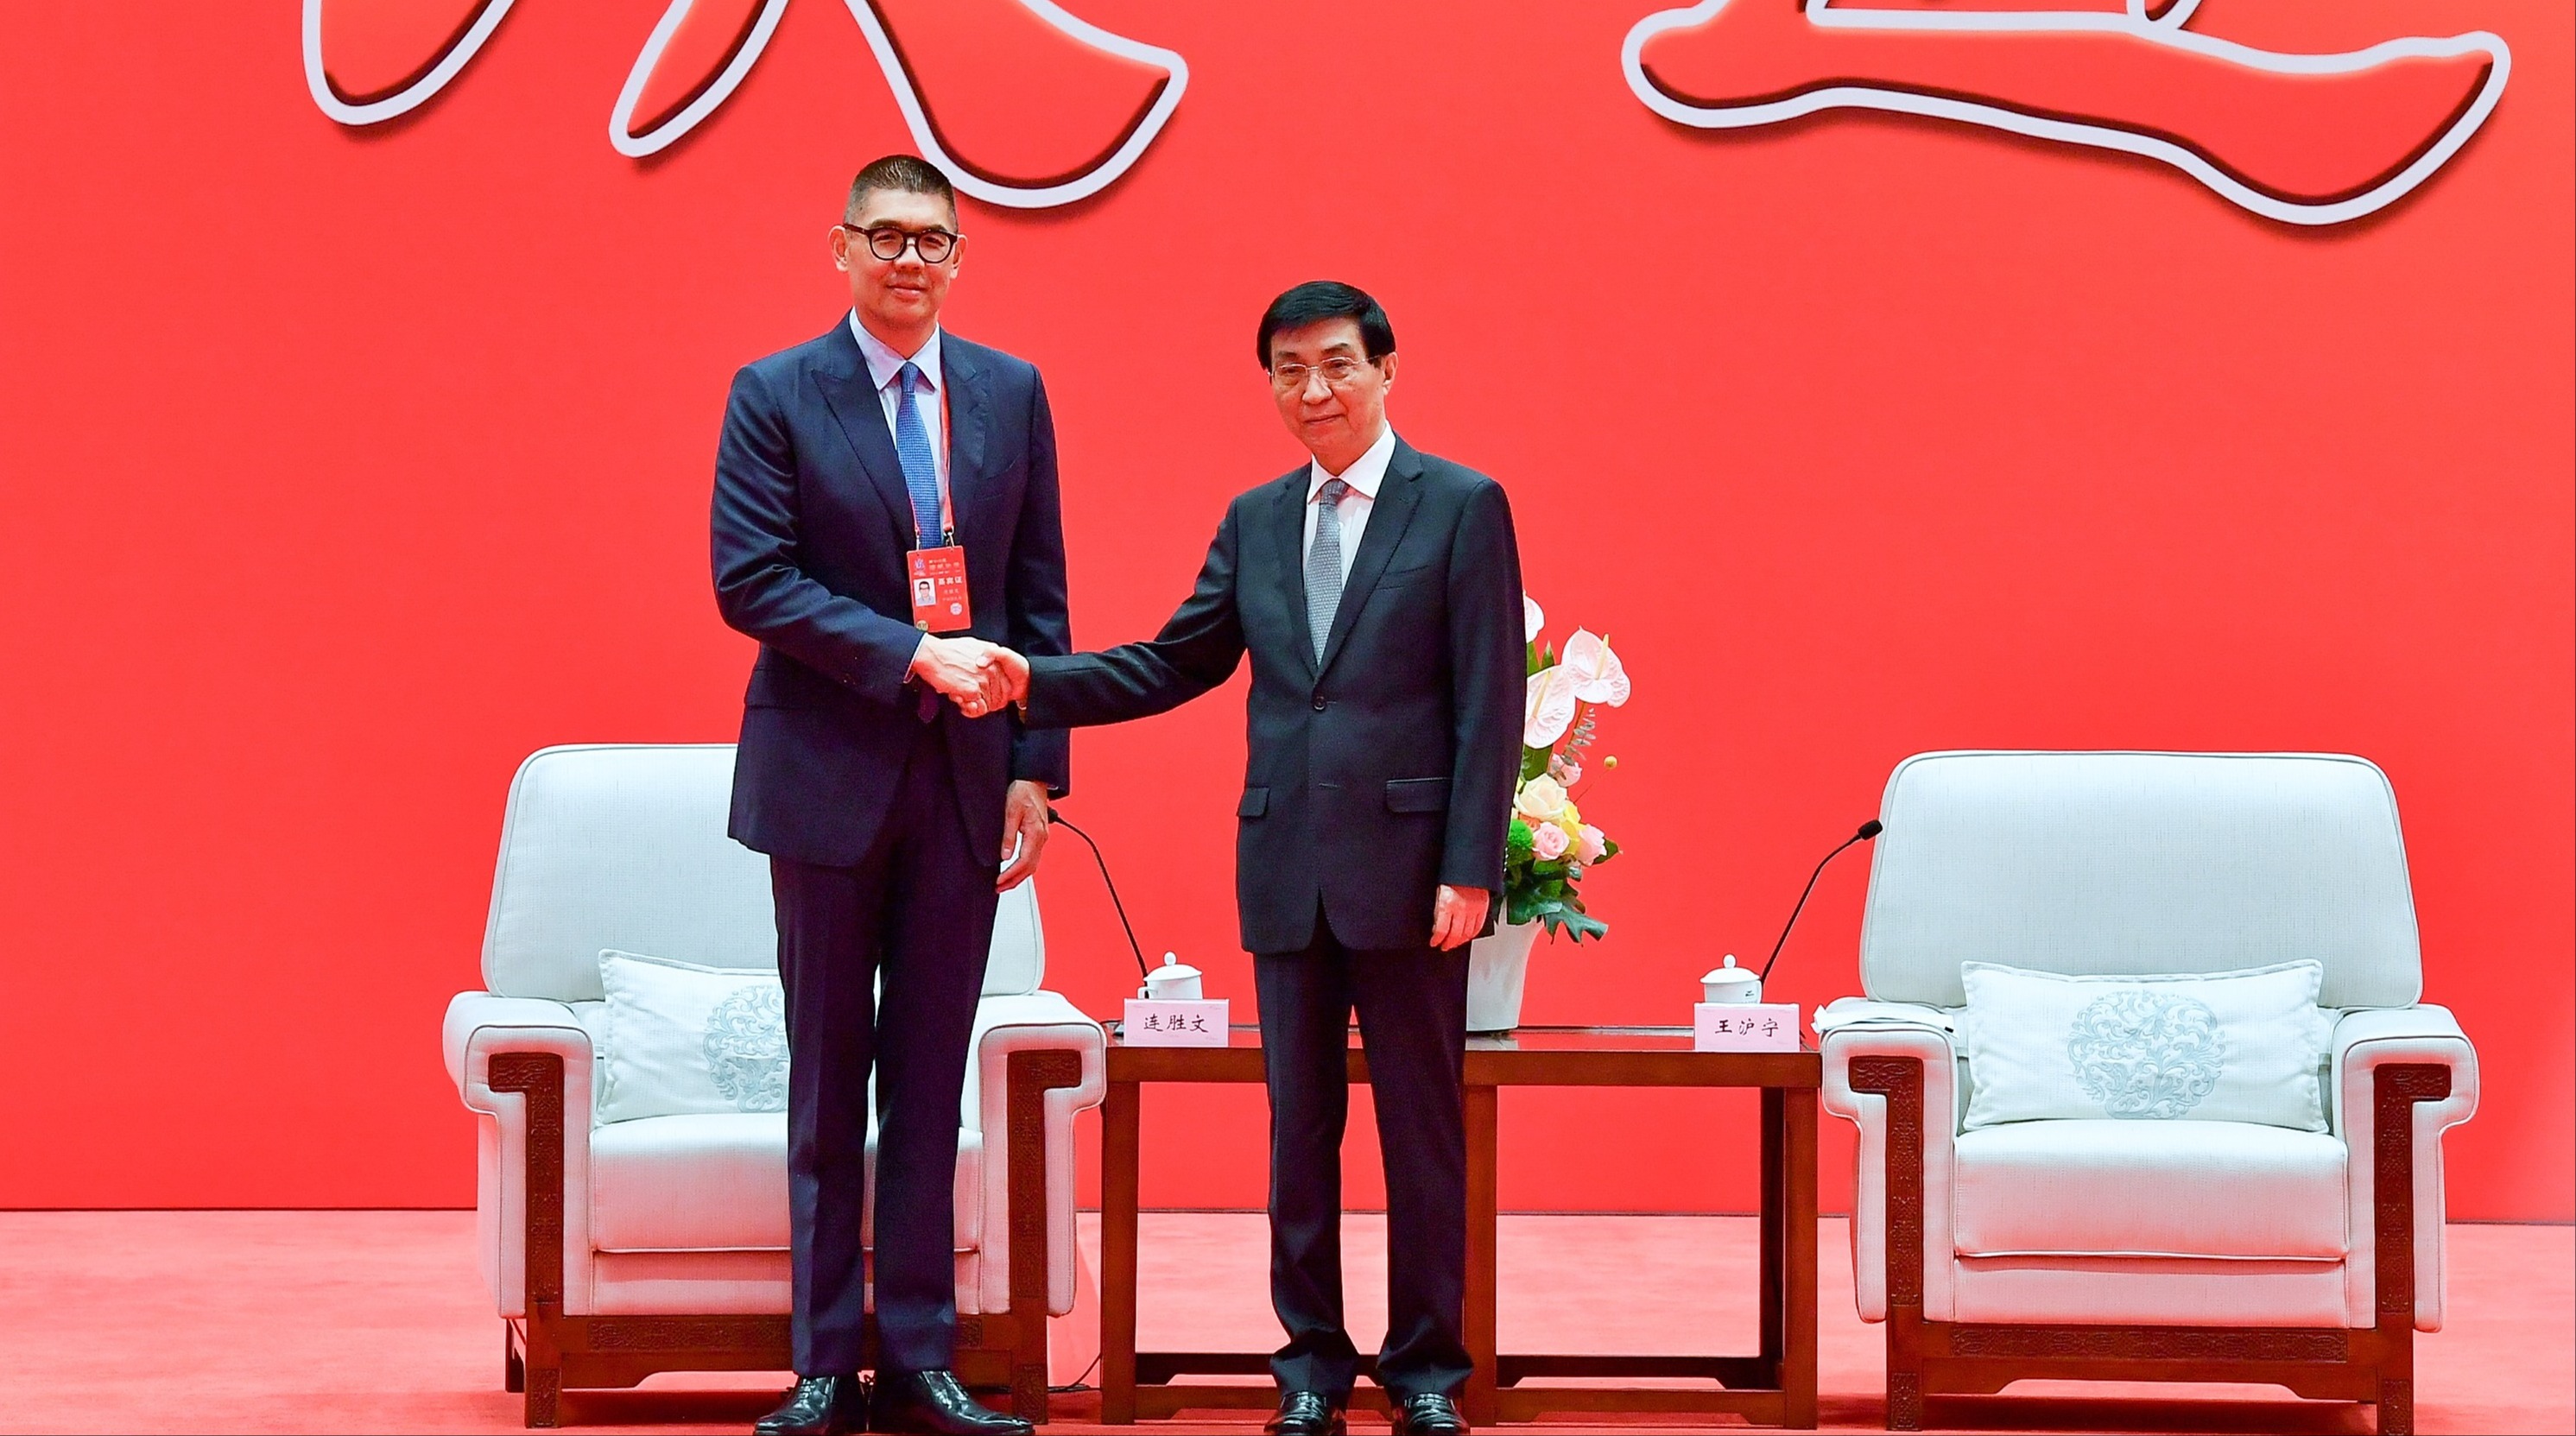 国民党副主席连胜文（左）参加在厦门举行的海峡论坛大会，与大陆全国政协主席王沪宁（右）握手致意。中新社